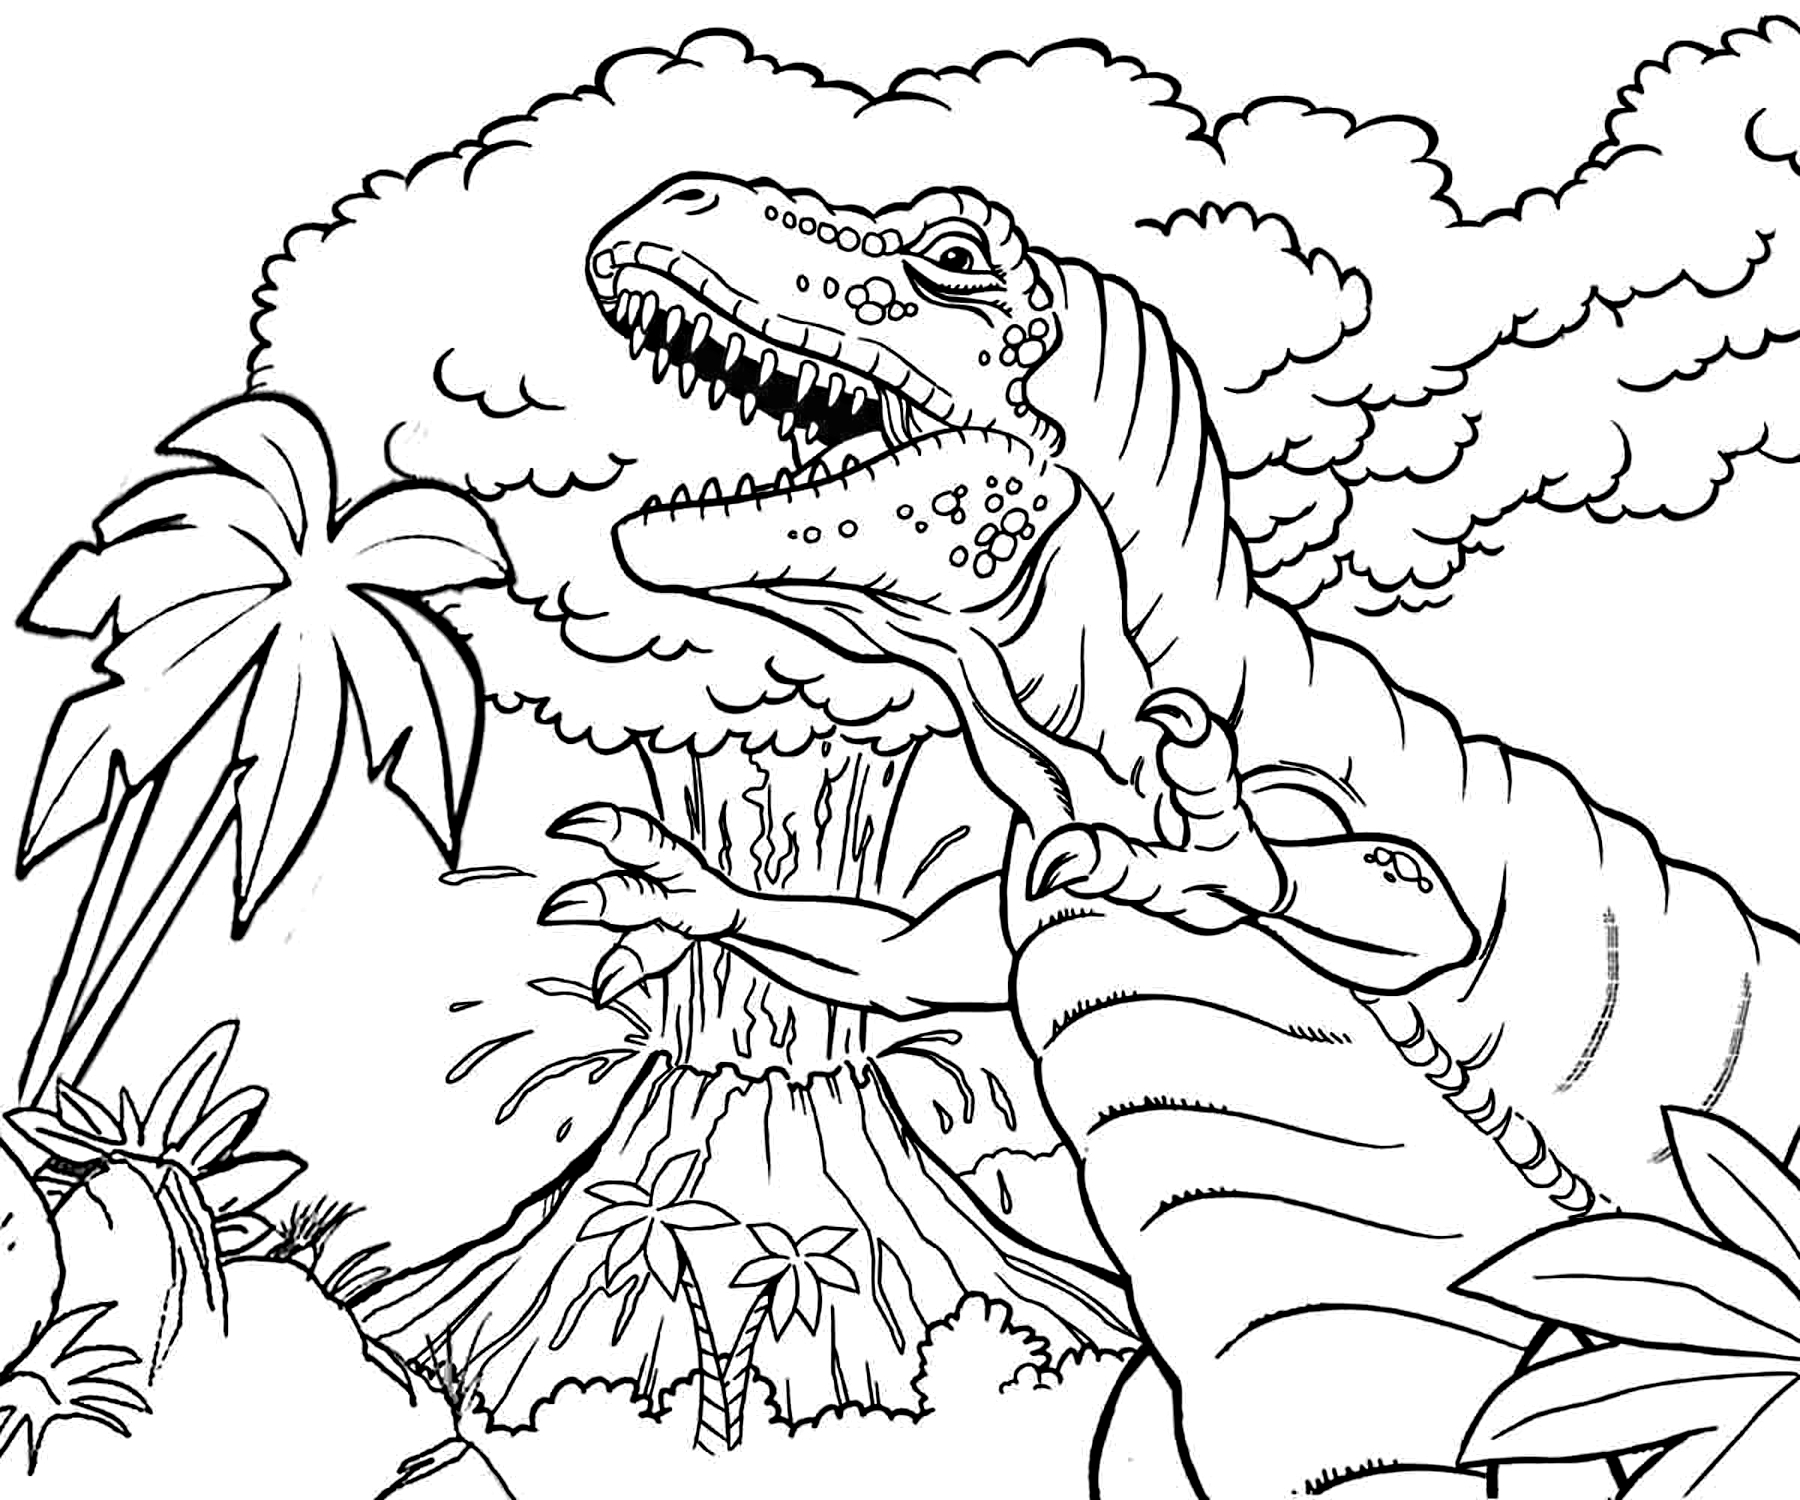 Динозавр раскраска распечатать а4. Тирекс раскраска парк Юрского периода. Раскраска динозавры мир Юрского периода. Динозавры / раскраска. Раскраски для мальчиков динозавры.